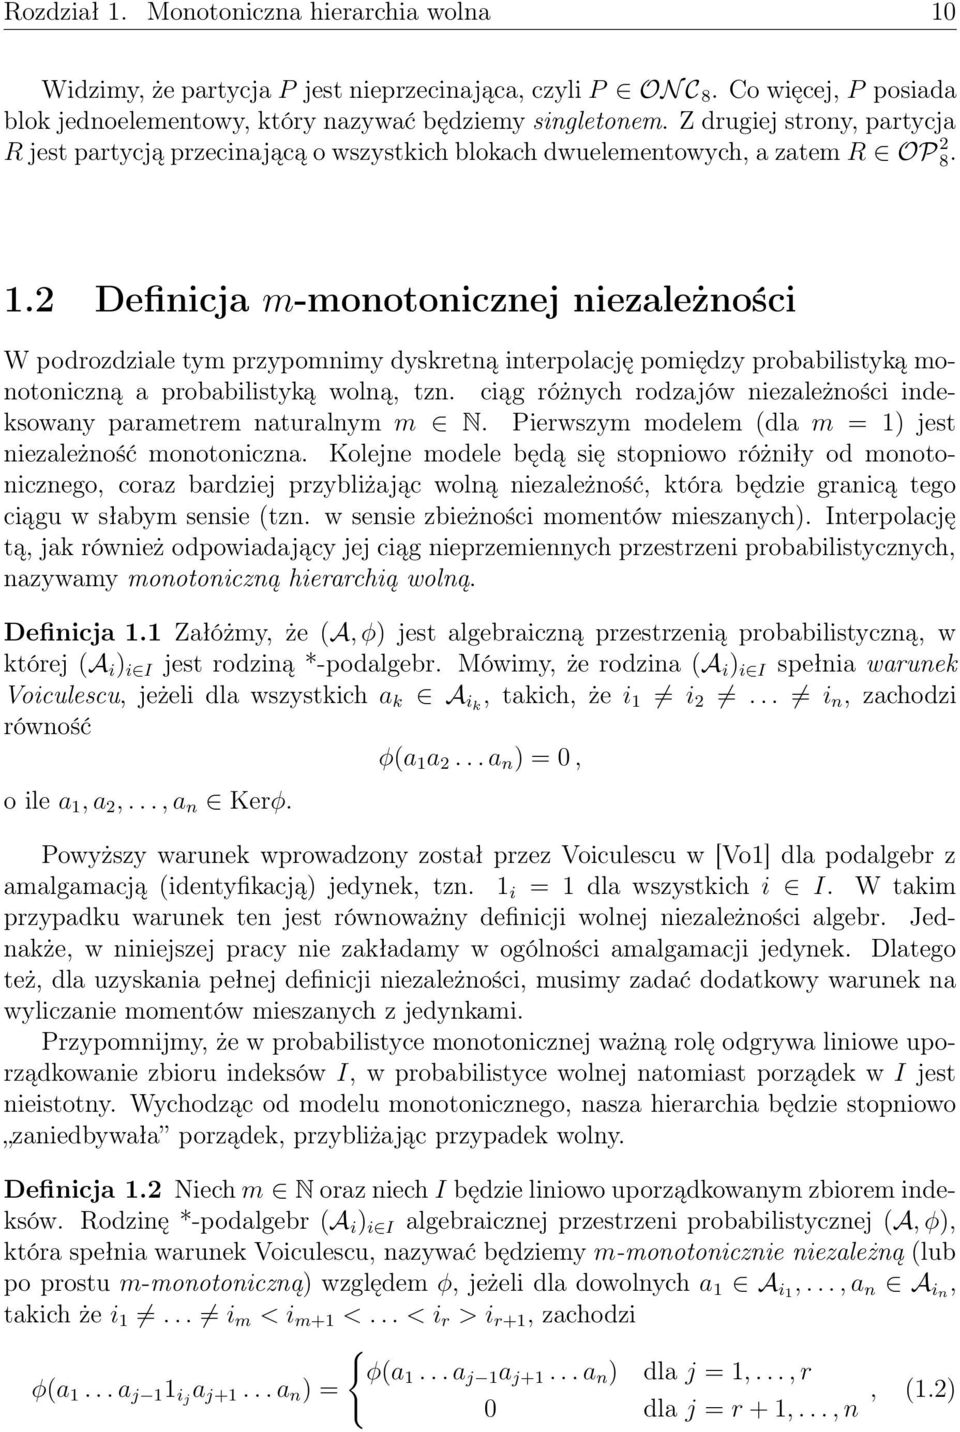 2 Definicja m-monotonicznej niezależności W podrozdziale tym przypomnimy dyskretną interpolację pomiędzy probabilistyką monotoniczną a probabilistyką wolną, tzn.